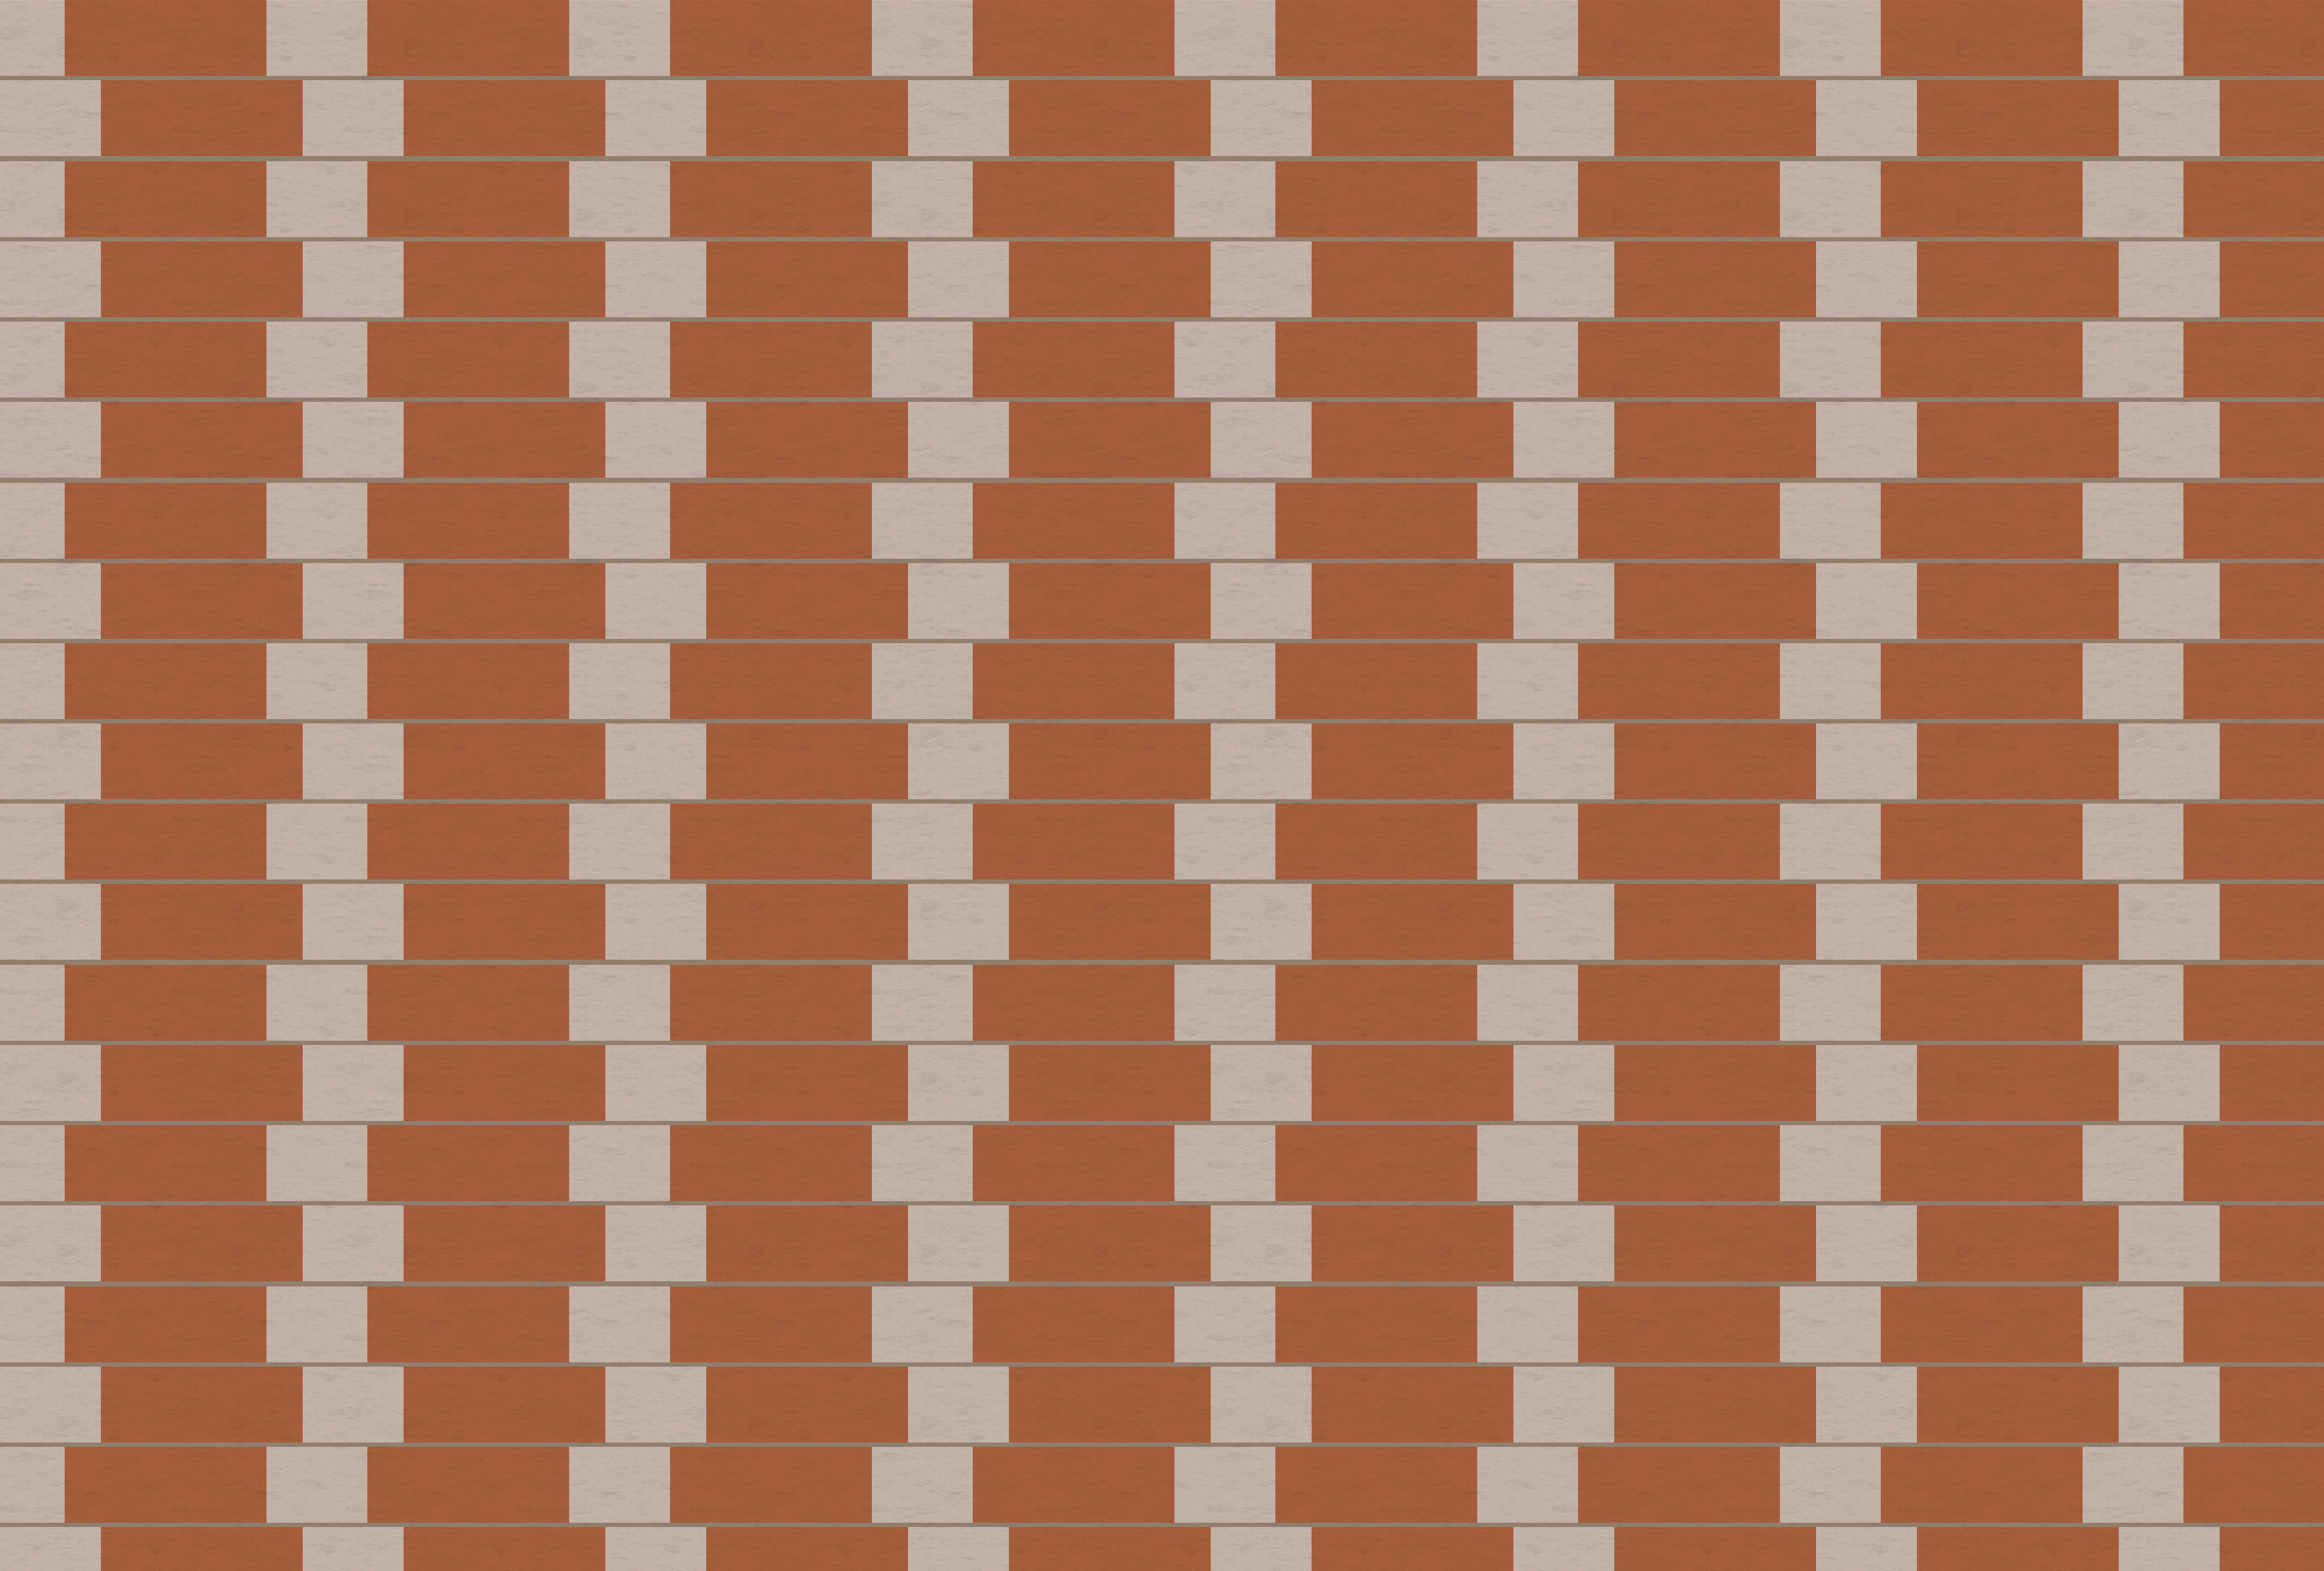 Selco brick wall optical illusion